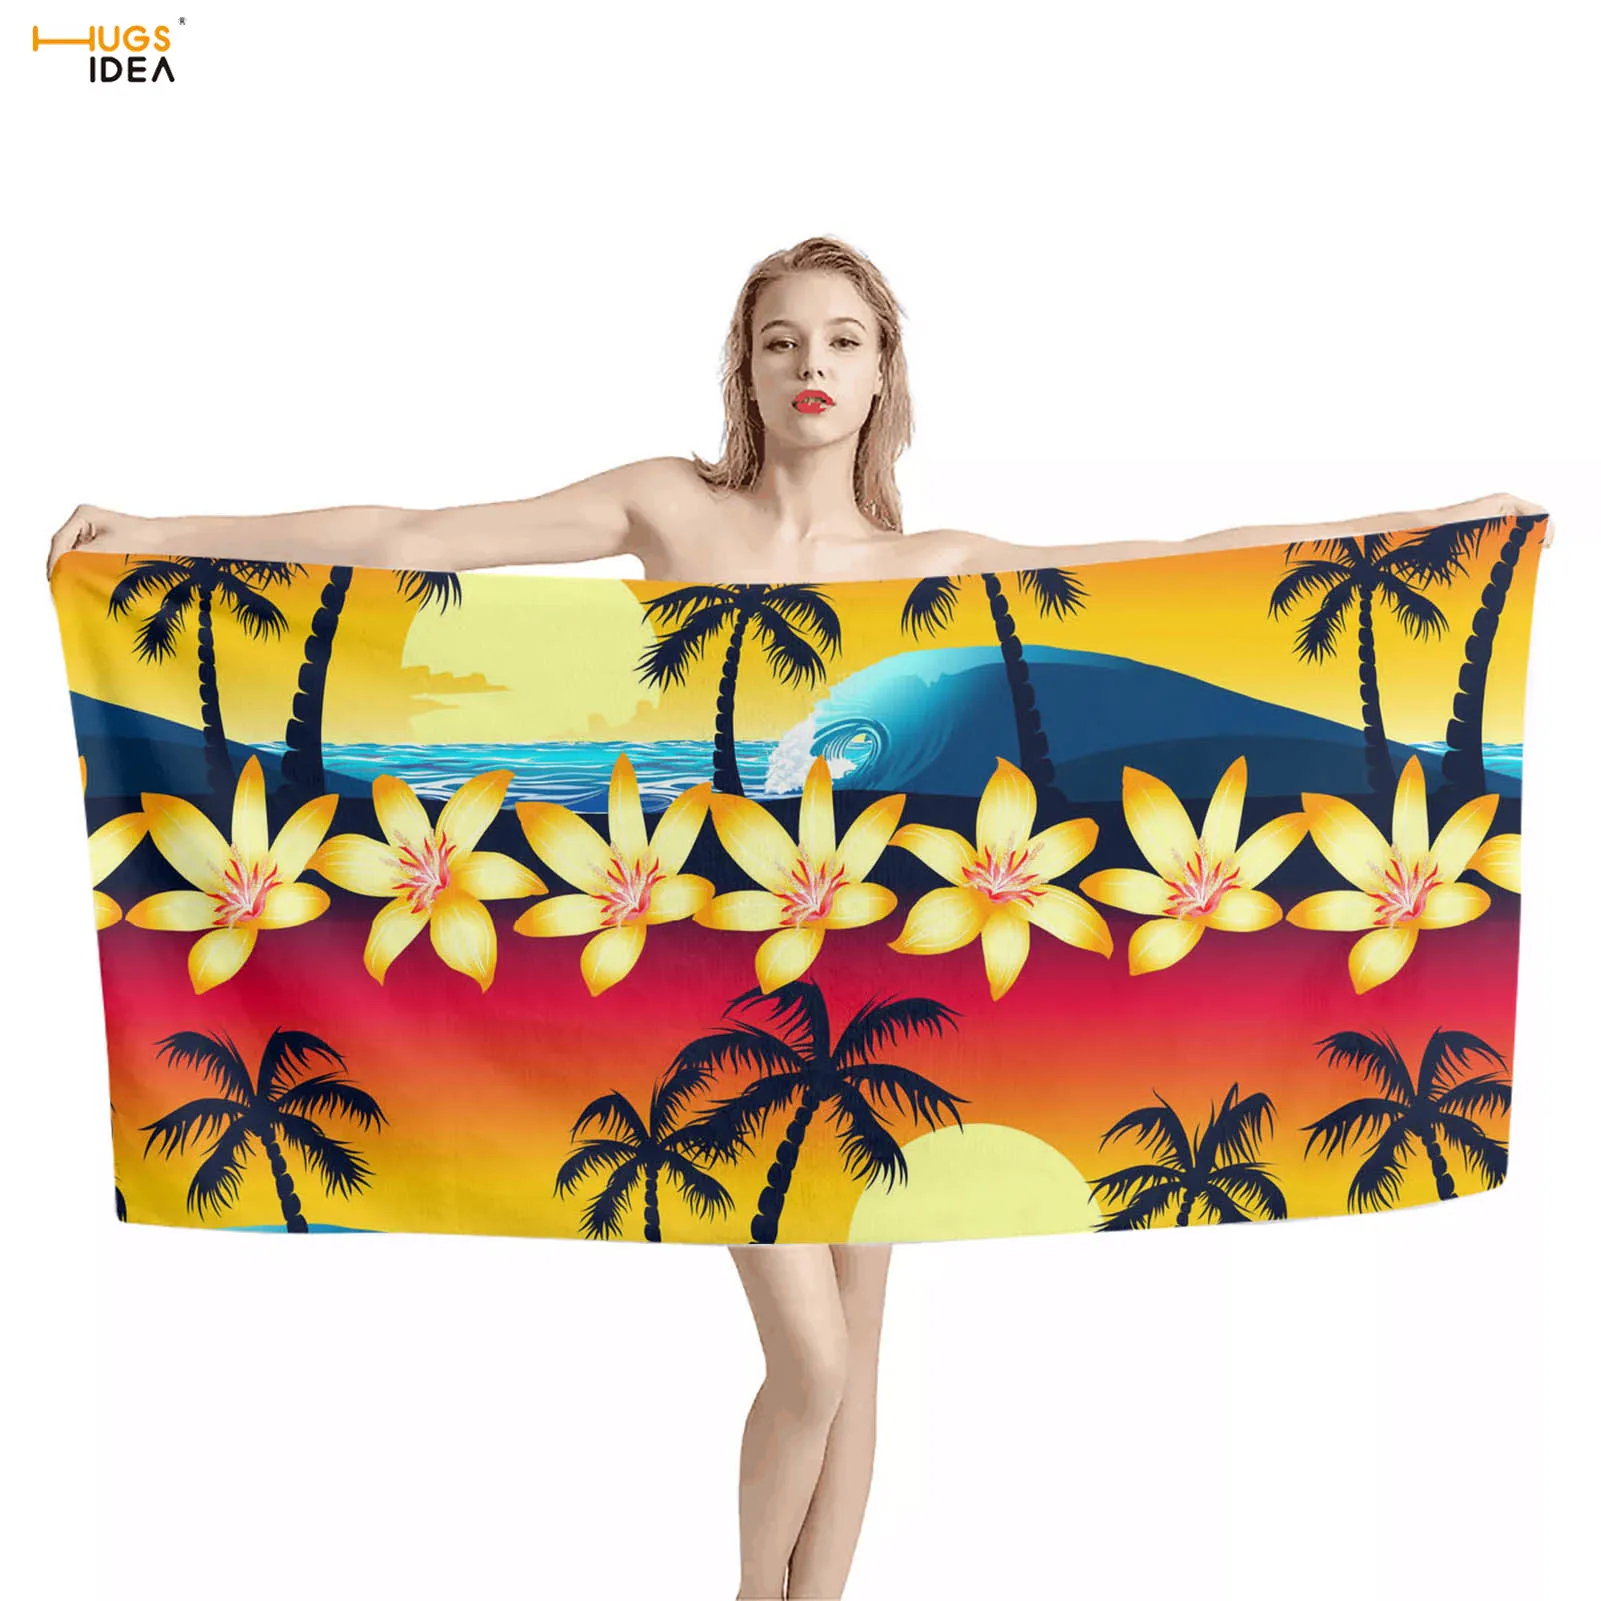 

HUGSIDEA пляжное полотенце с рисунком тропической пальмы для женщин и мужчин, мягкое Впитывающее банное полотенце из микрофибры для душа, полот...